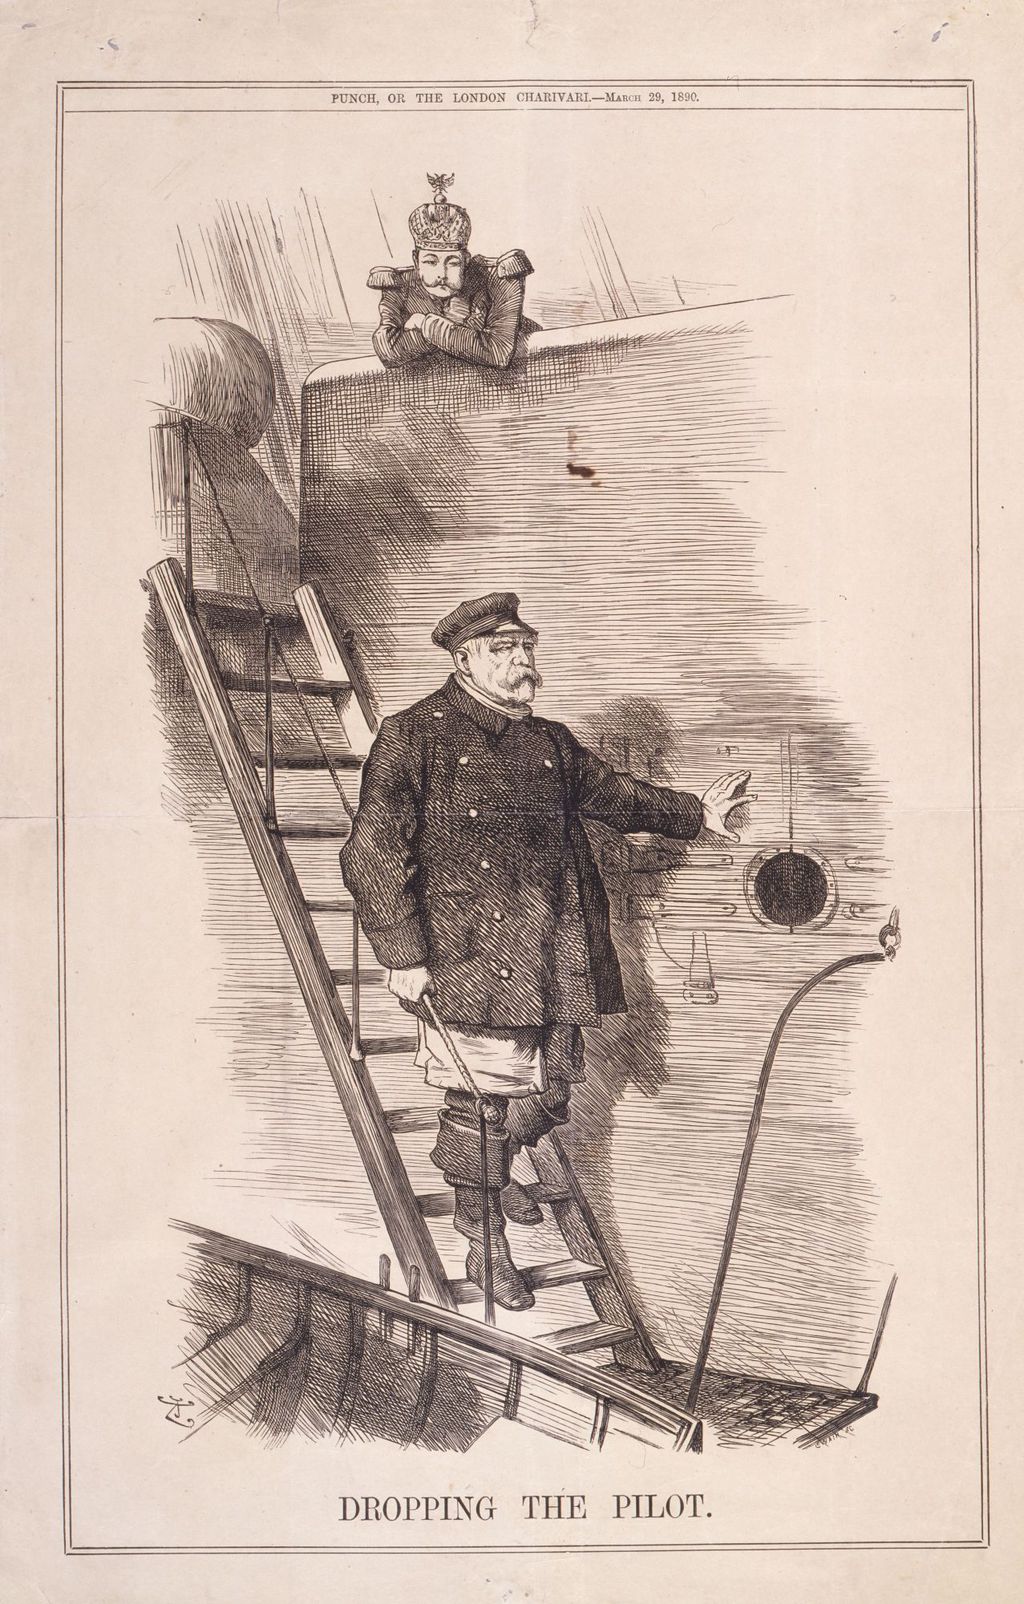 Grafik: "Dropping the pilot", 1890